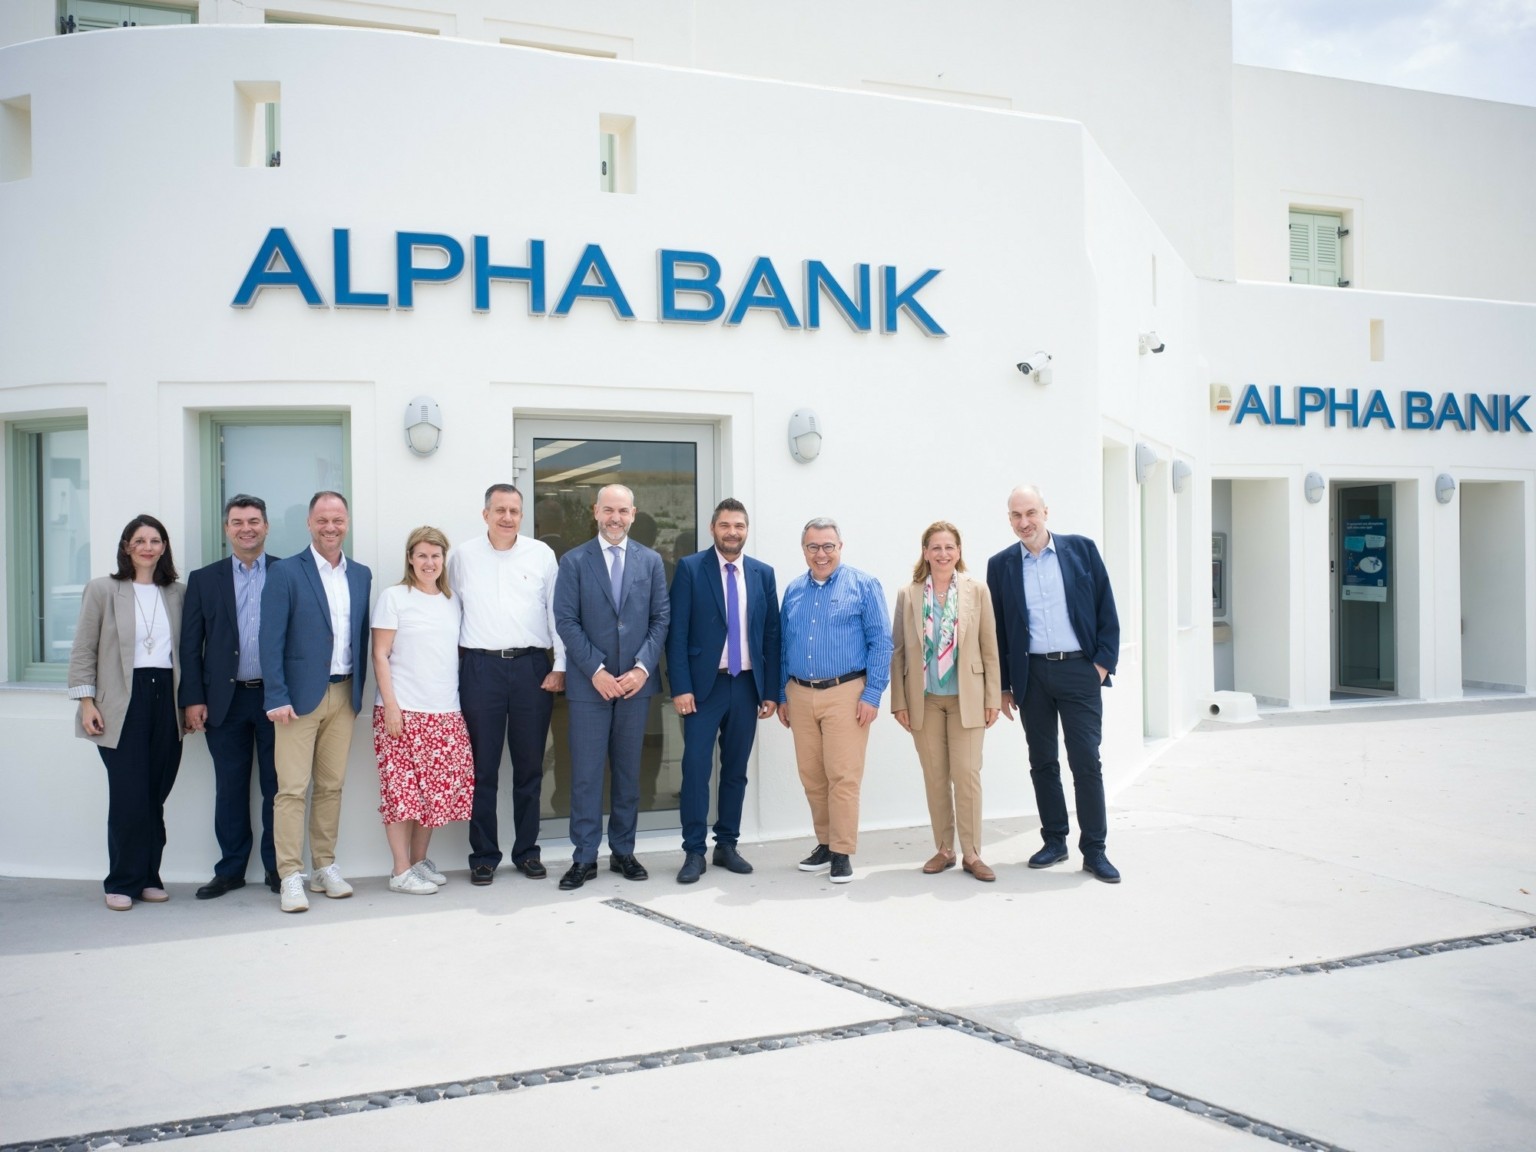 Ψάλτης (Alpha Bank): Είμαστε αποφασισμένοι να στηρίξουμε το brand Ελλάδα